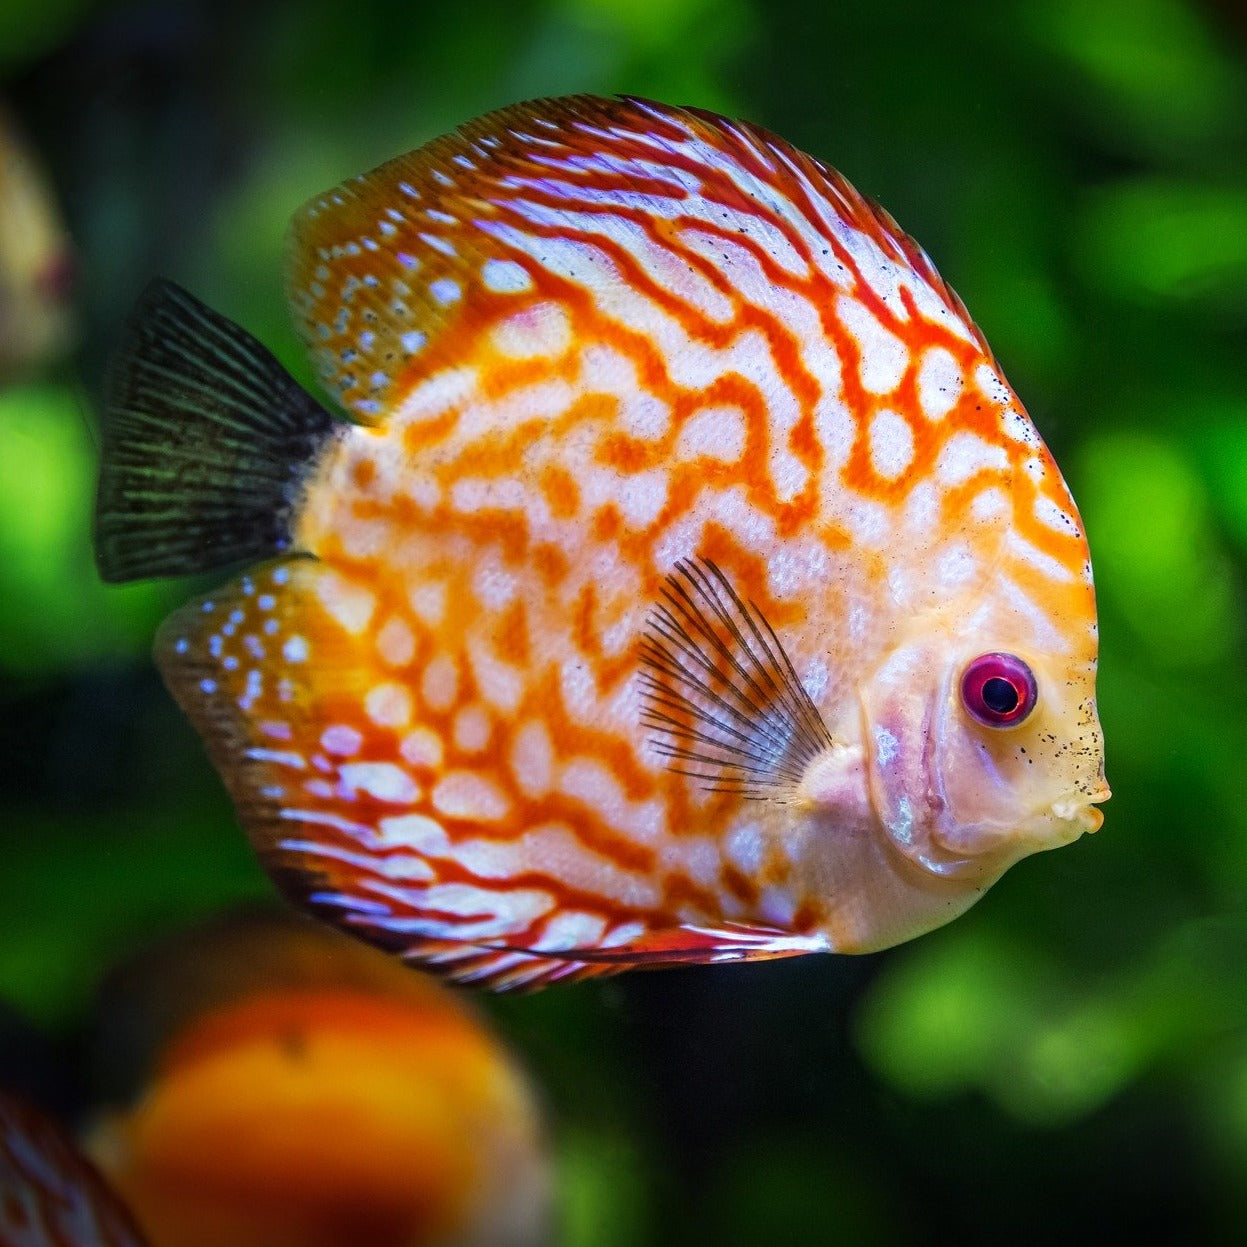 Live Aquarium Plant Bundle | Live Discus Fish Plants | DiscusGuy